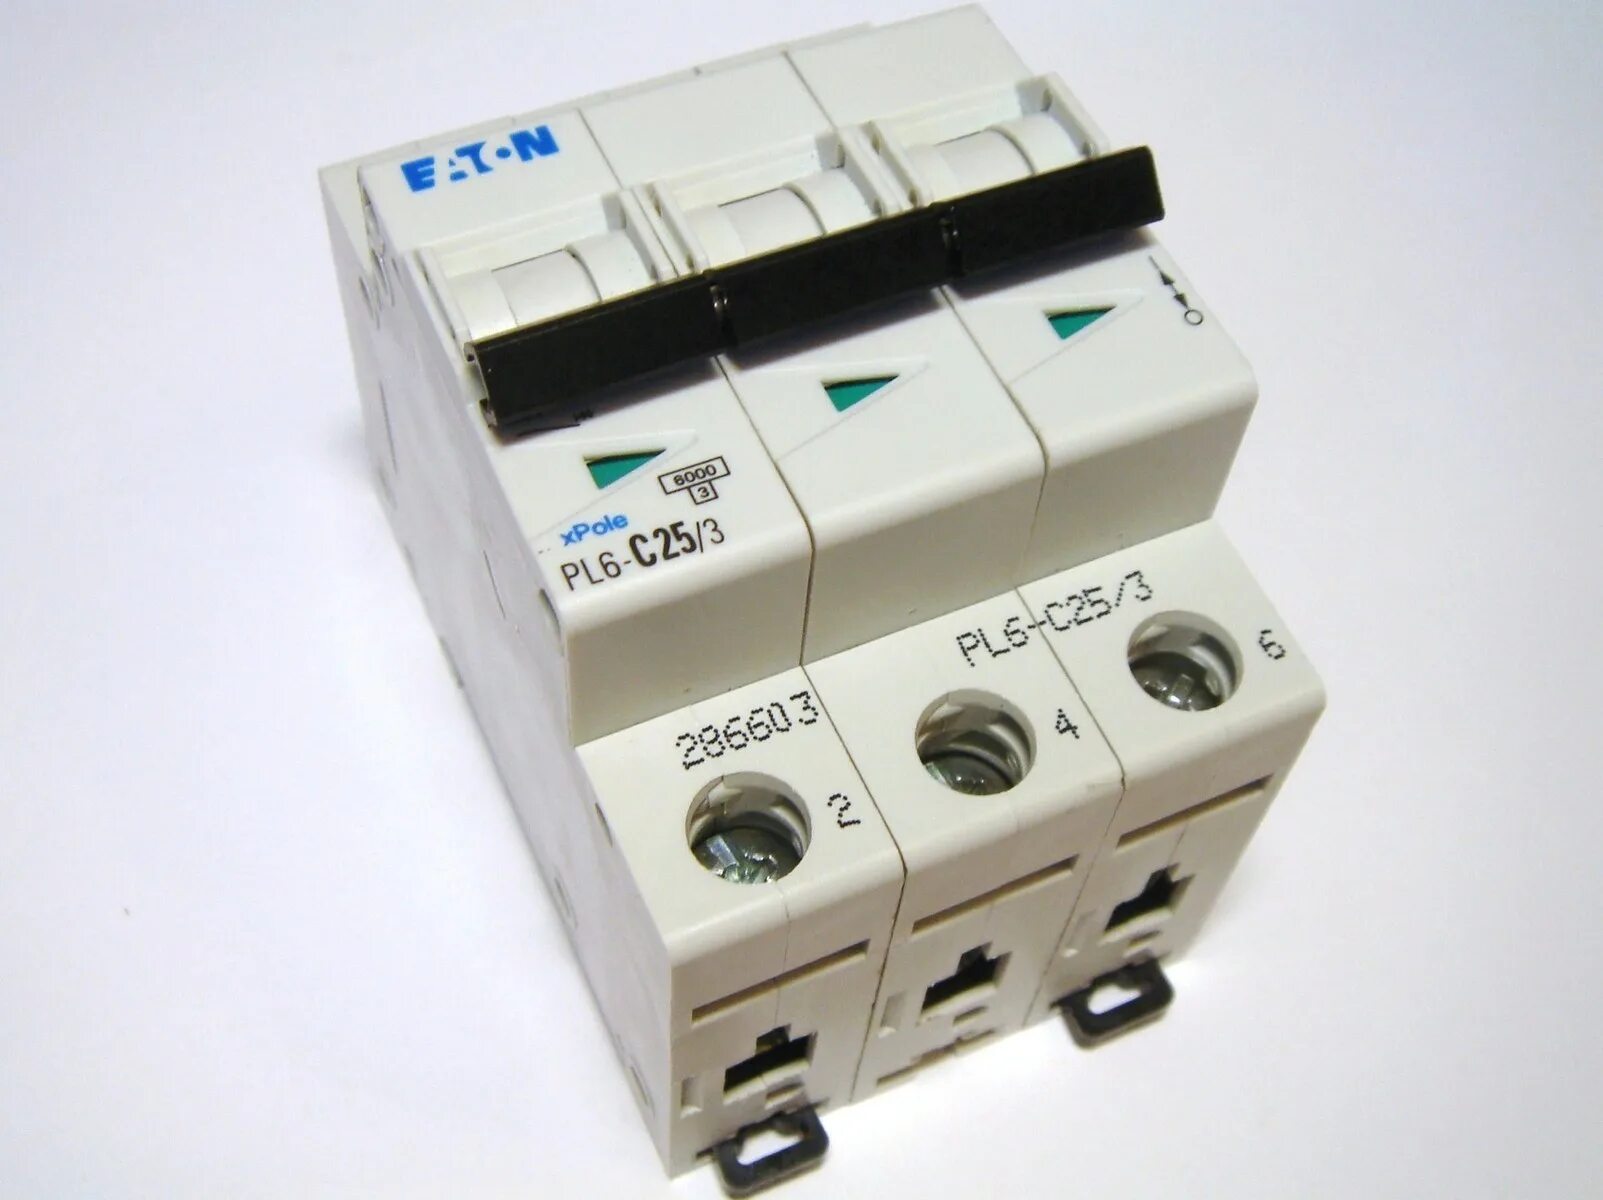 Выключатель 3 ампера. Eaton pl6-c16/3. Eaton pl6 c25/3 автоматический. Автоматы Eaton 20c 3.